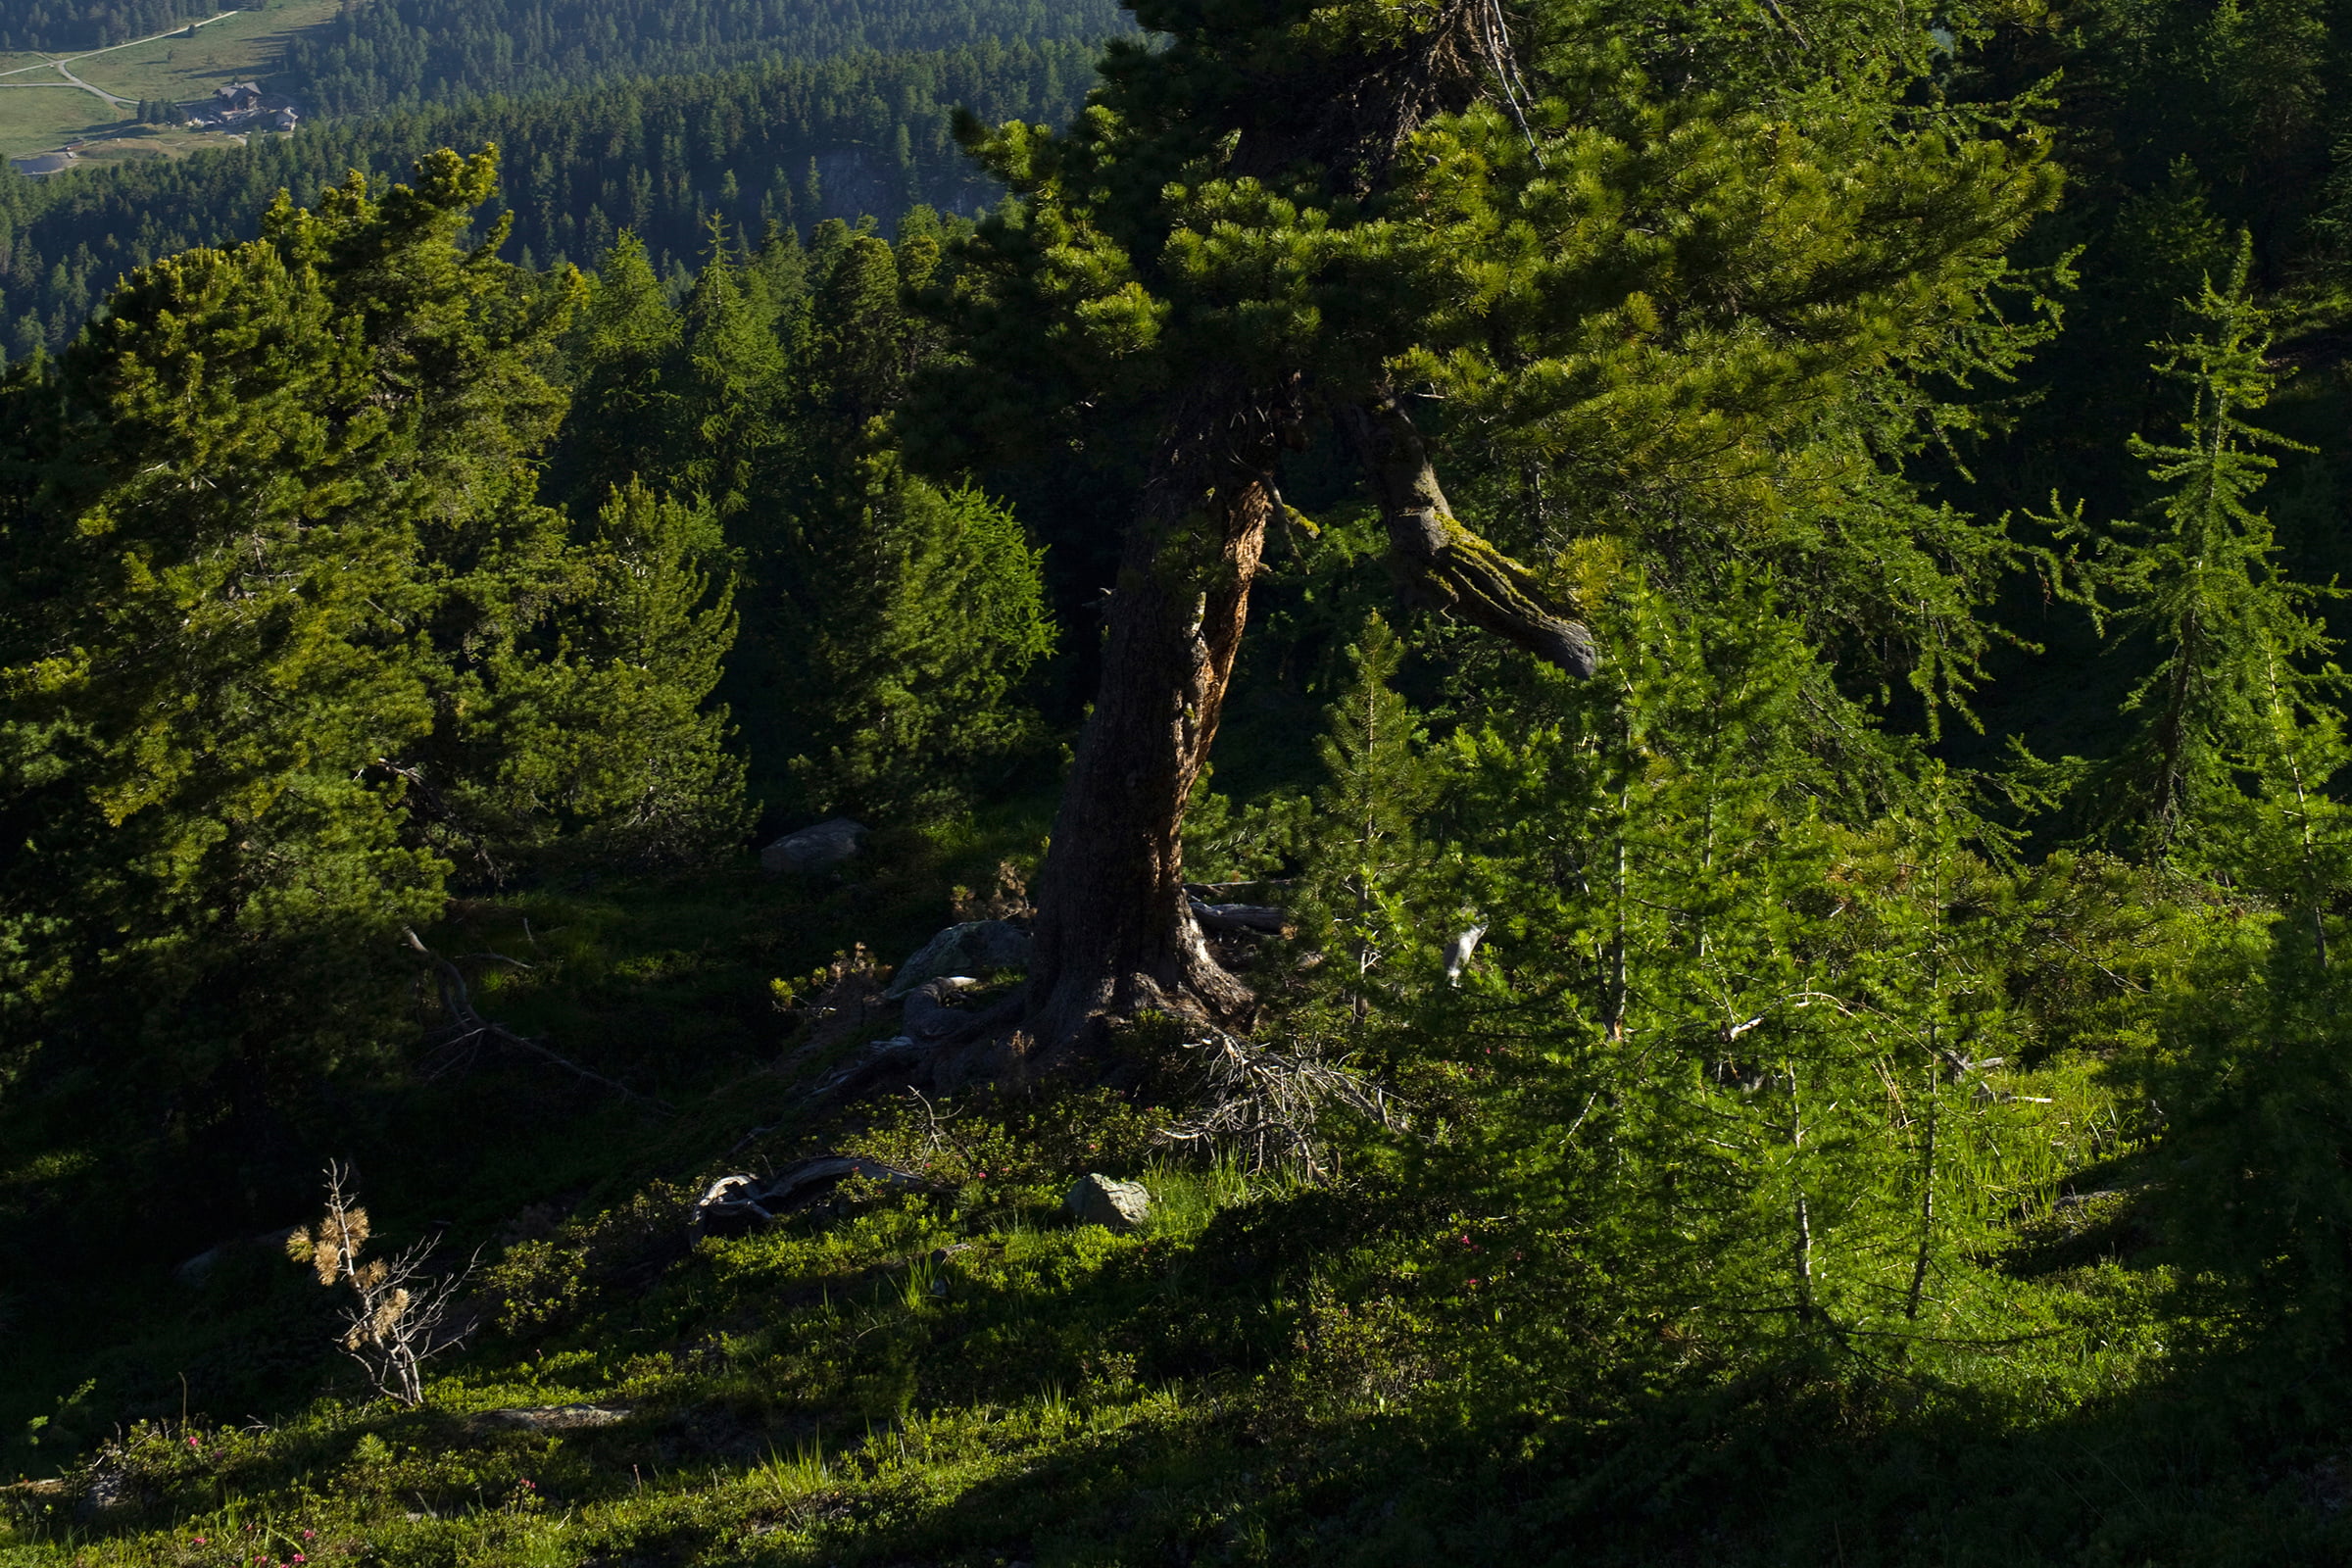 Swiss stone pine